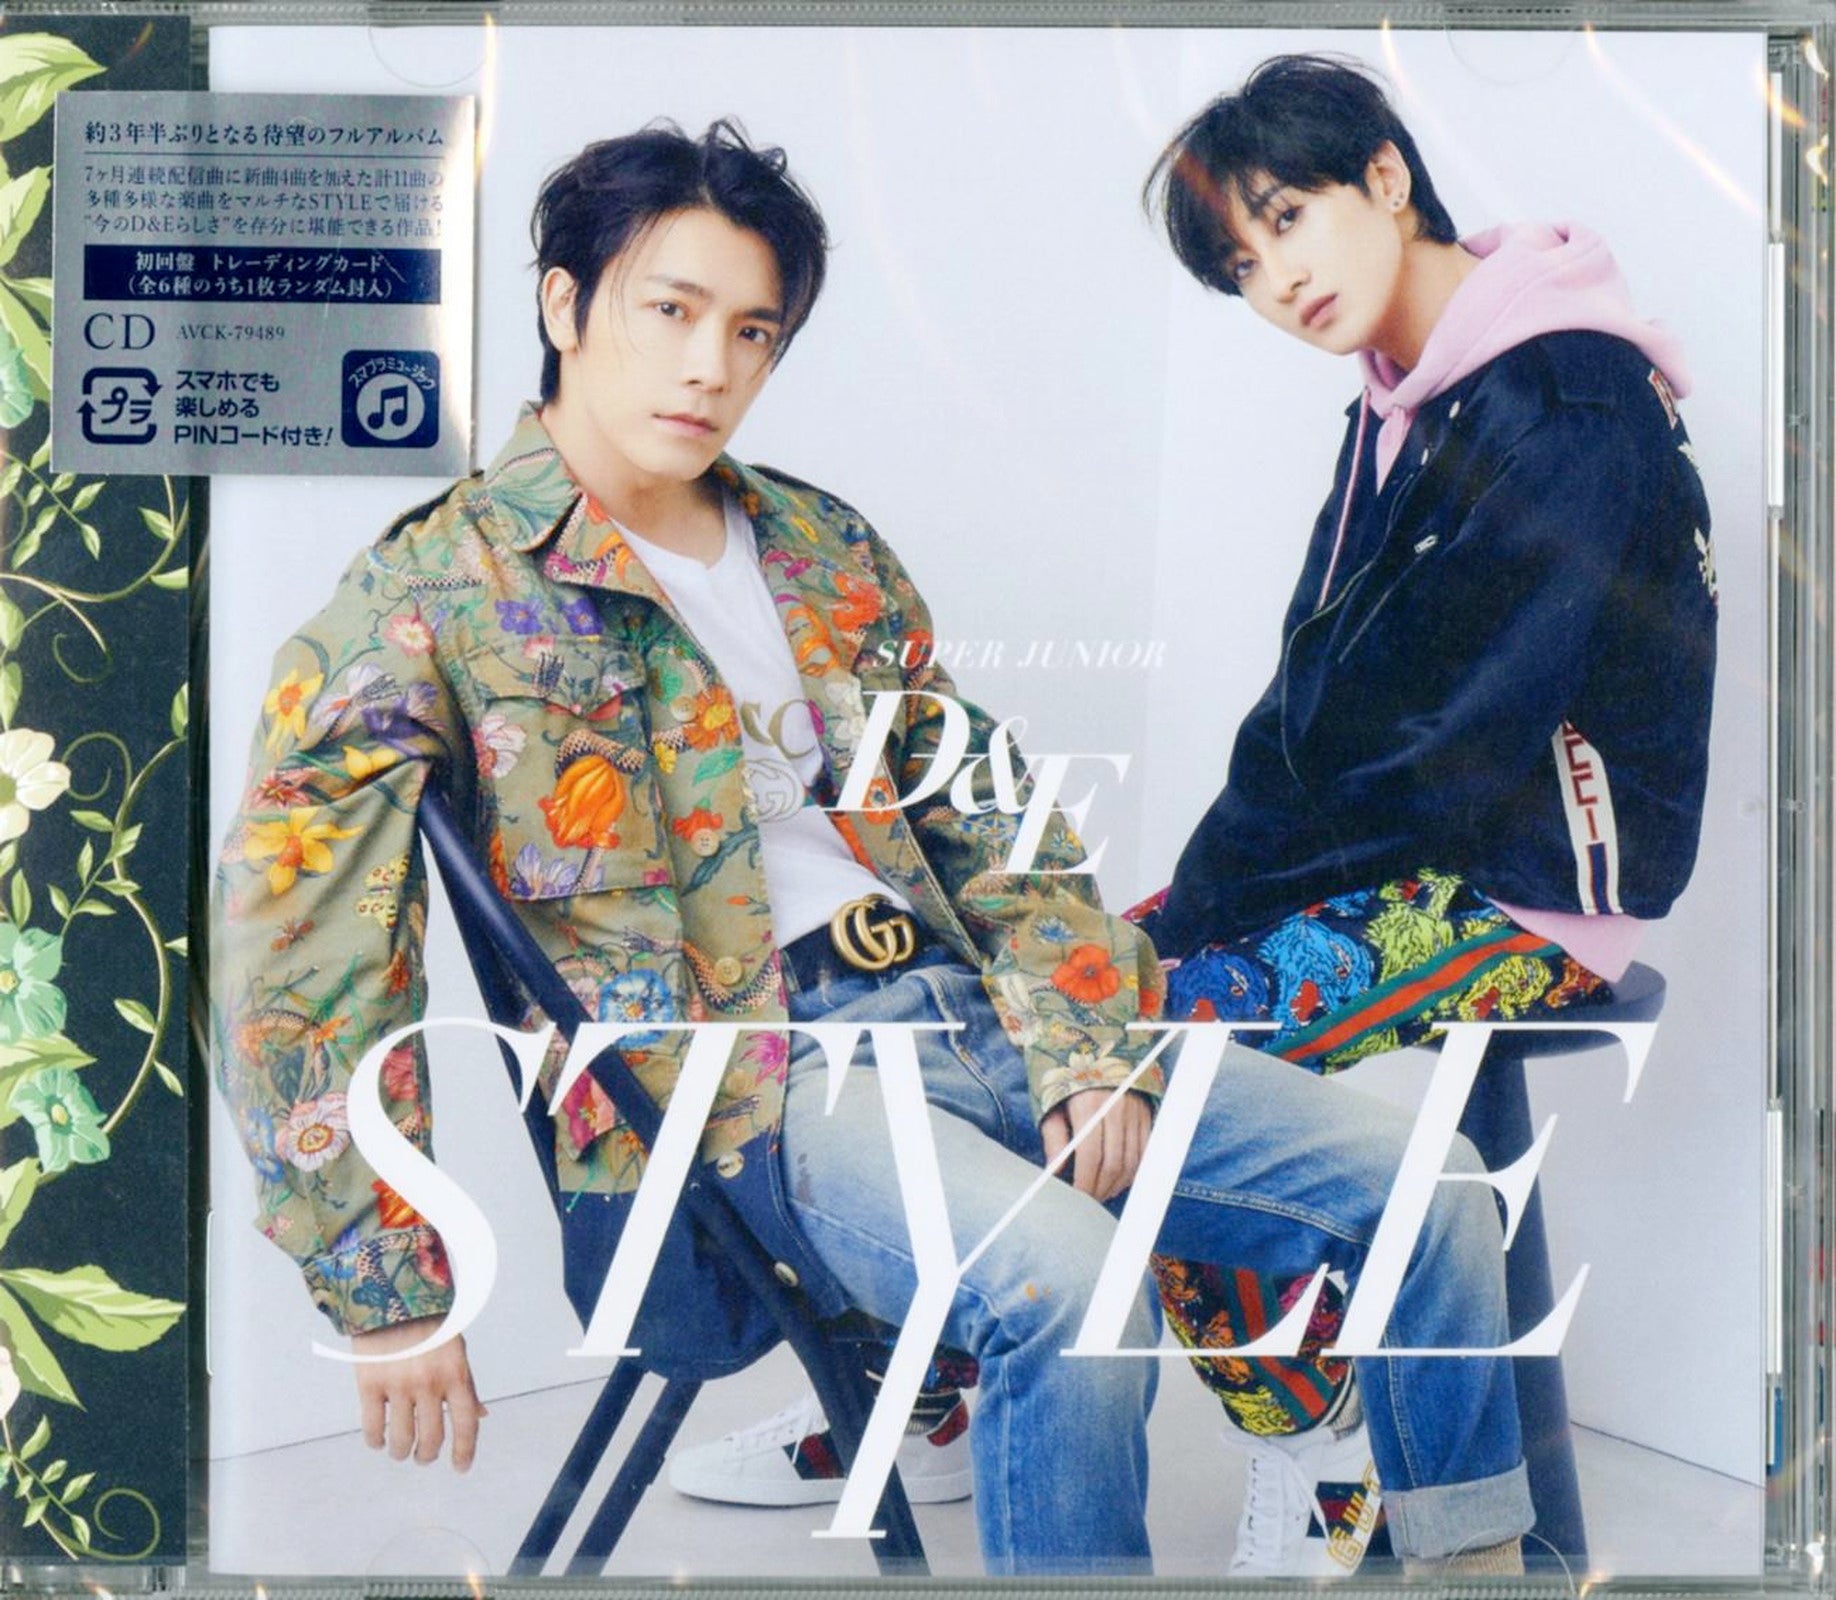 新品未開封☆SUPER JUNIOR-D&E 日本フルアルバム STYLE ELF-JAPAN盤(CD 